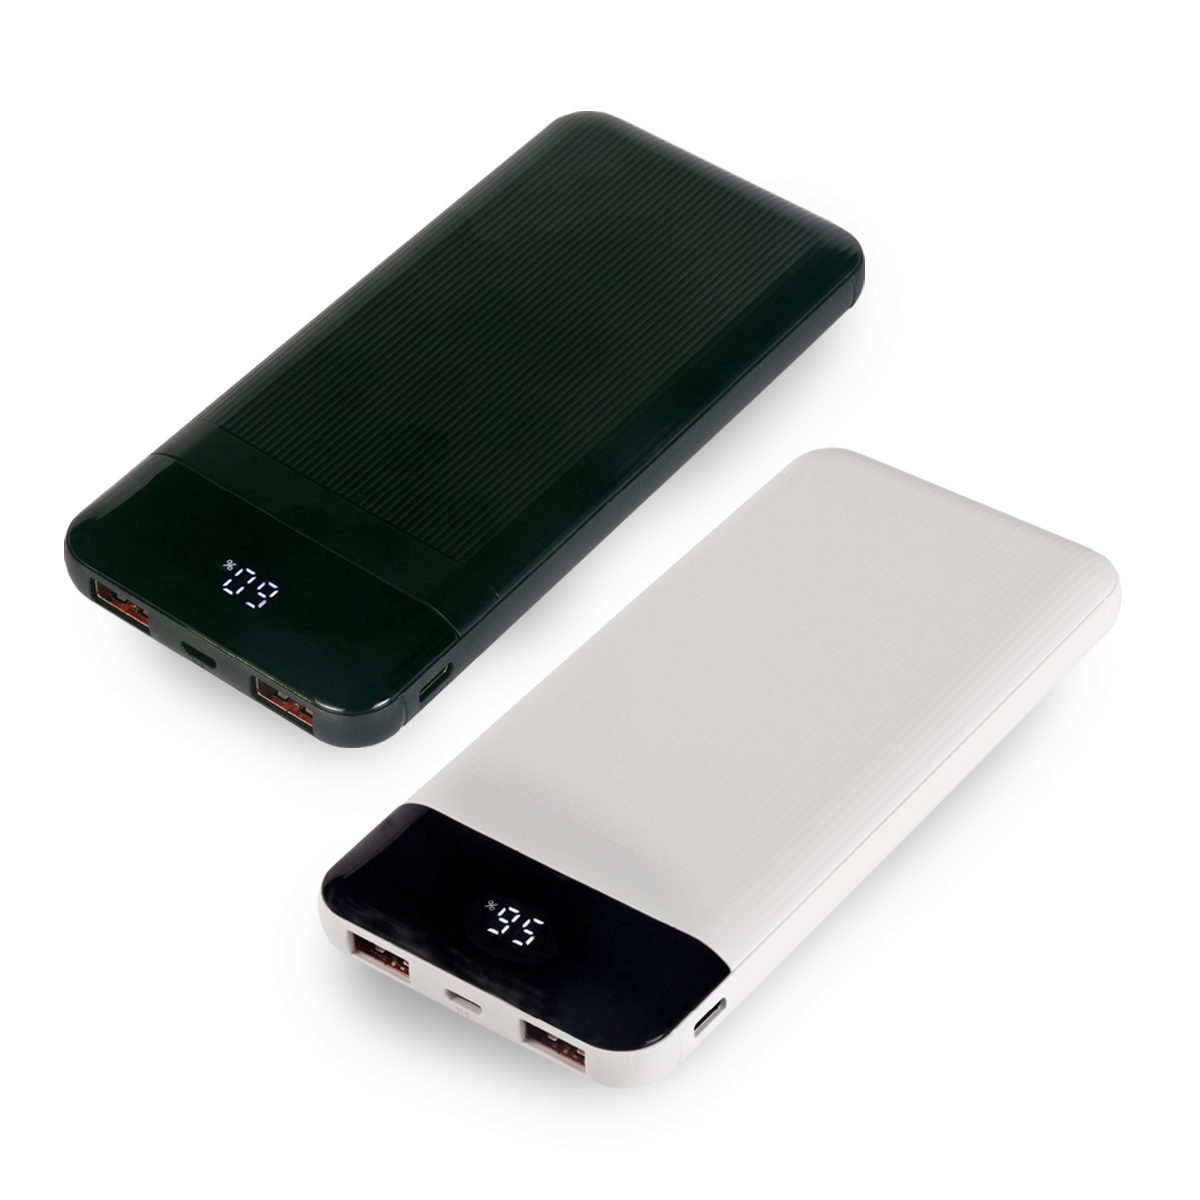 סלין - מטען נייד 10,000mAh למכשירים ניידים. 
סוללה חזקה ומהירה ל-iPadומכשירים ניידים.
מסך תצוגה LCD

כבל טעינה USB ל-Type-C.